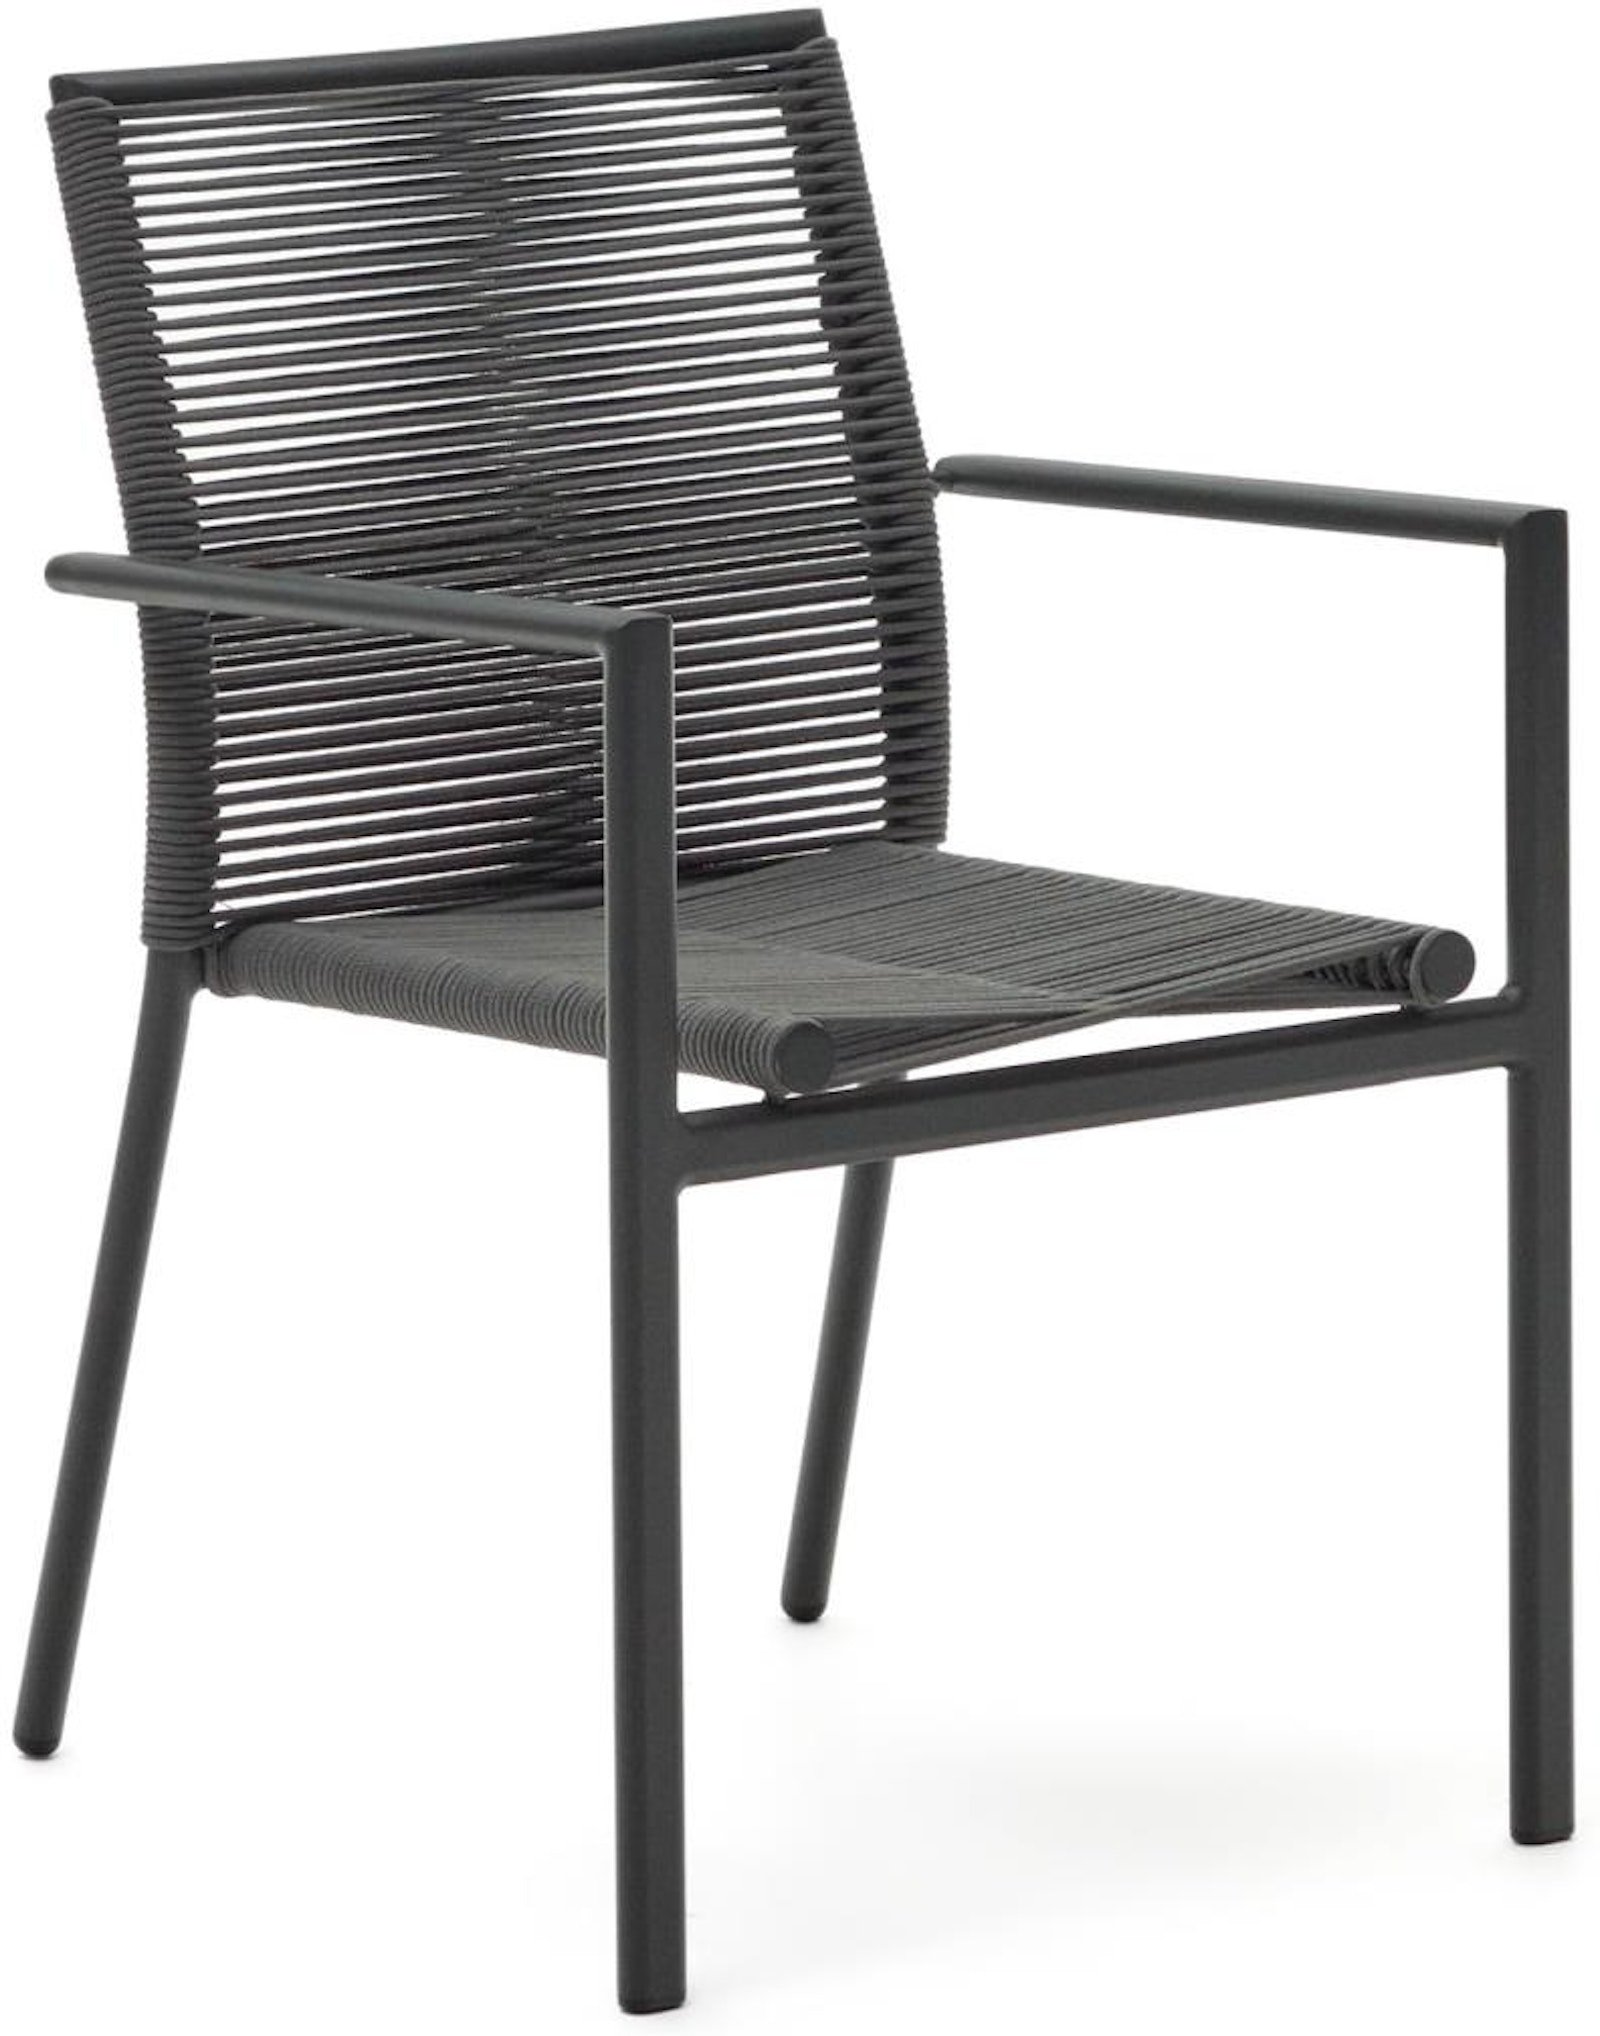 10: Culip, Udendørs stol, moderne, nordisk, reb by Laforma (H: 84 cm. x B: 56 cm. x L: 60 cm., Grå)